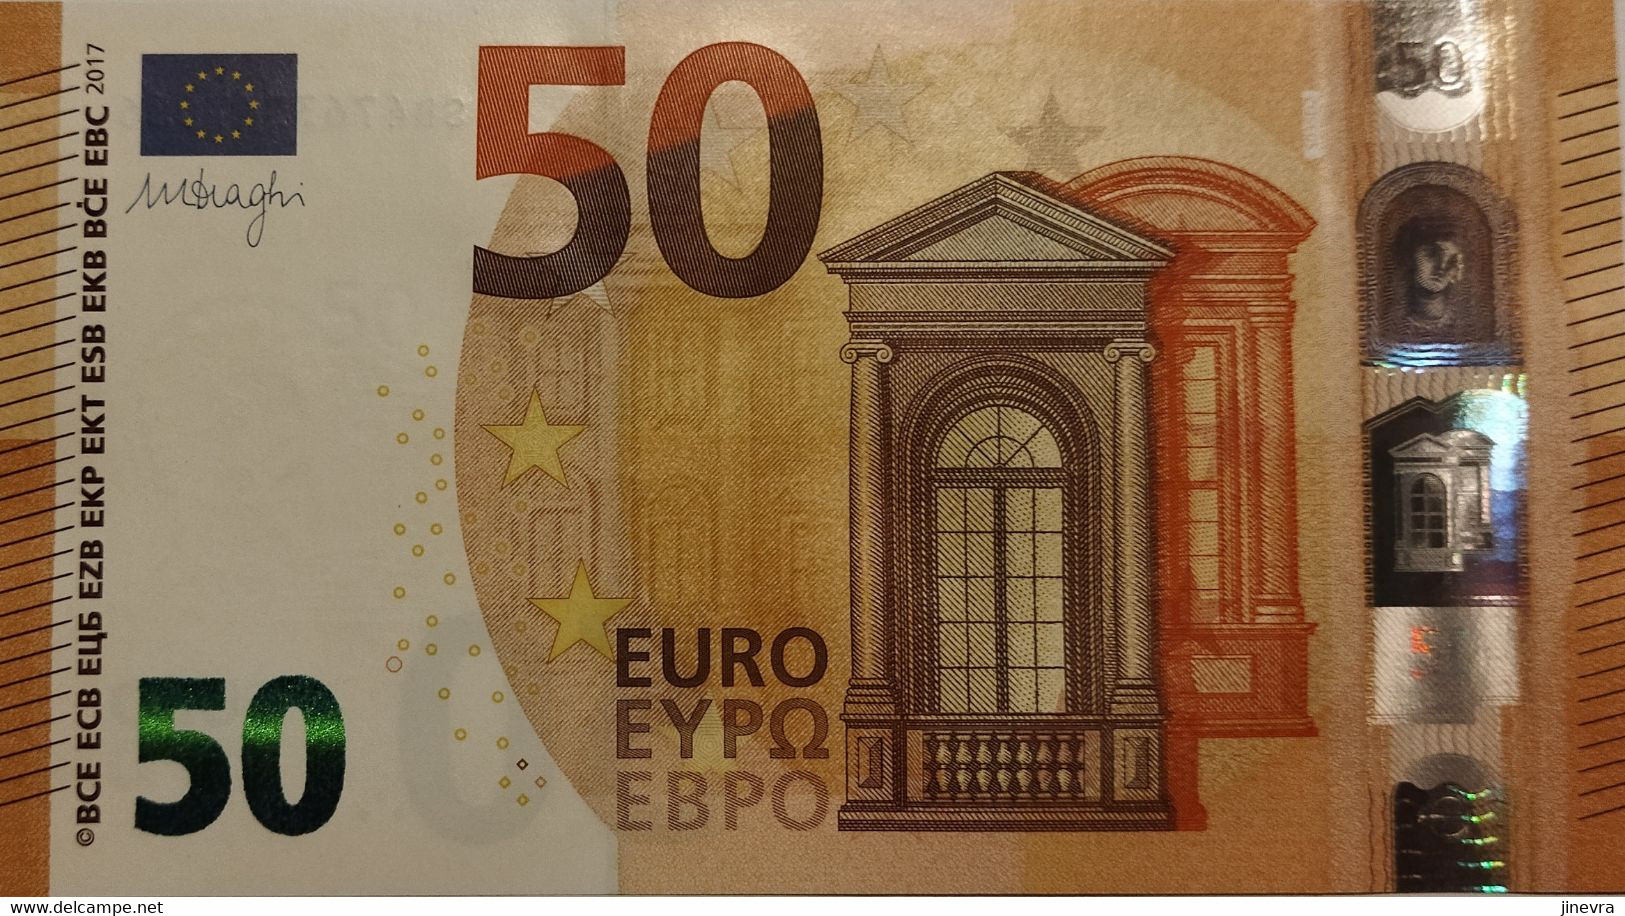 EUROPEAN UNION 50 EURO 2017 PICK 23s UNC - Otros – Europa